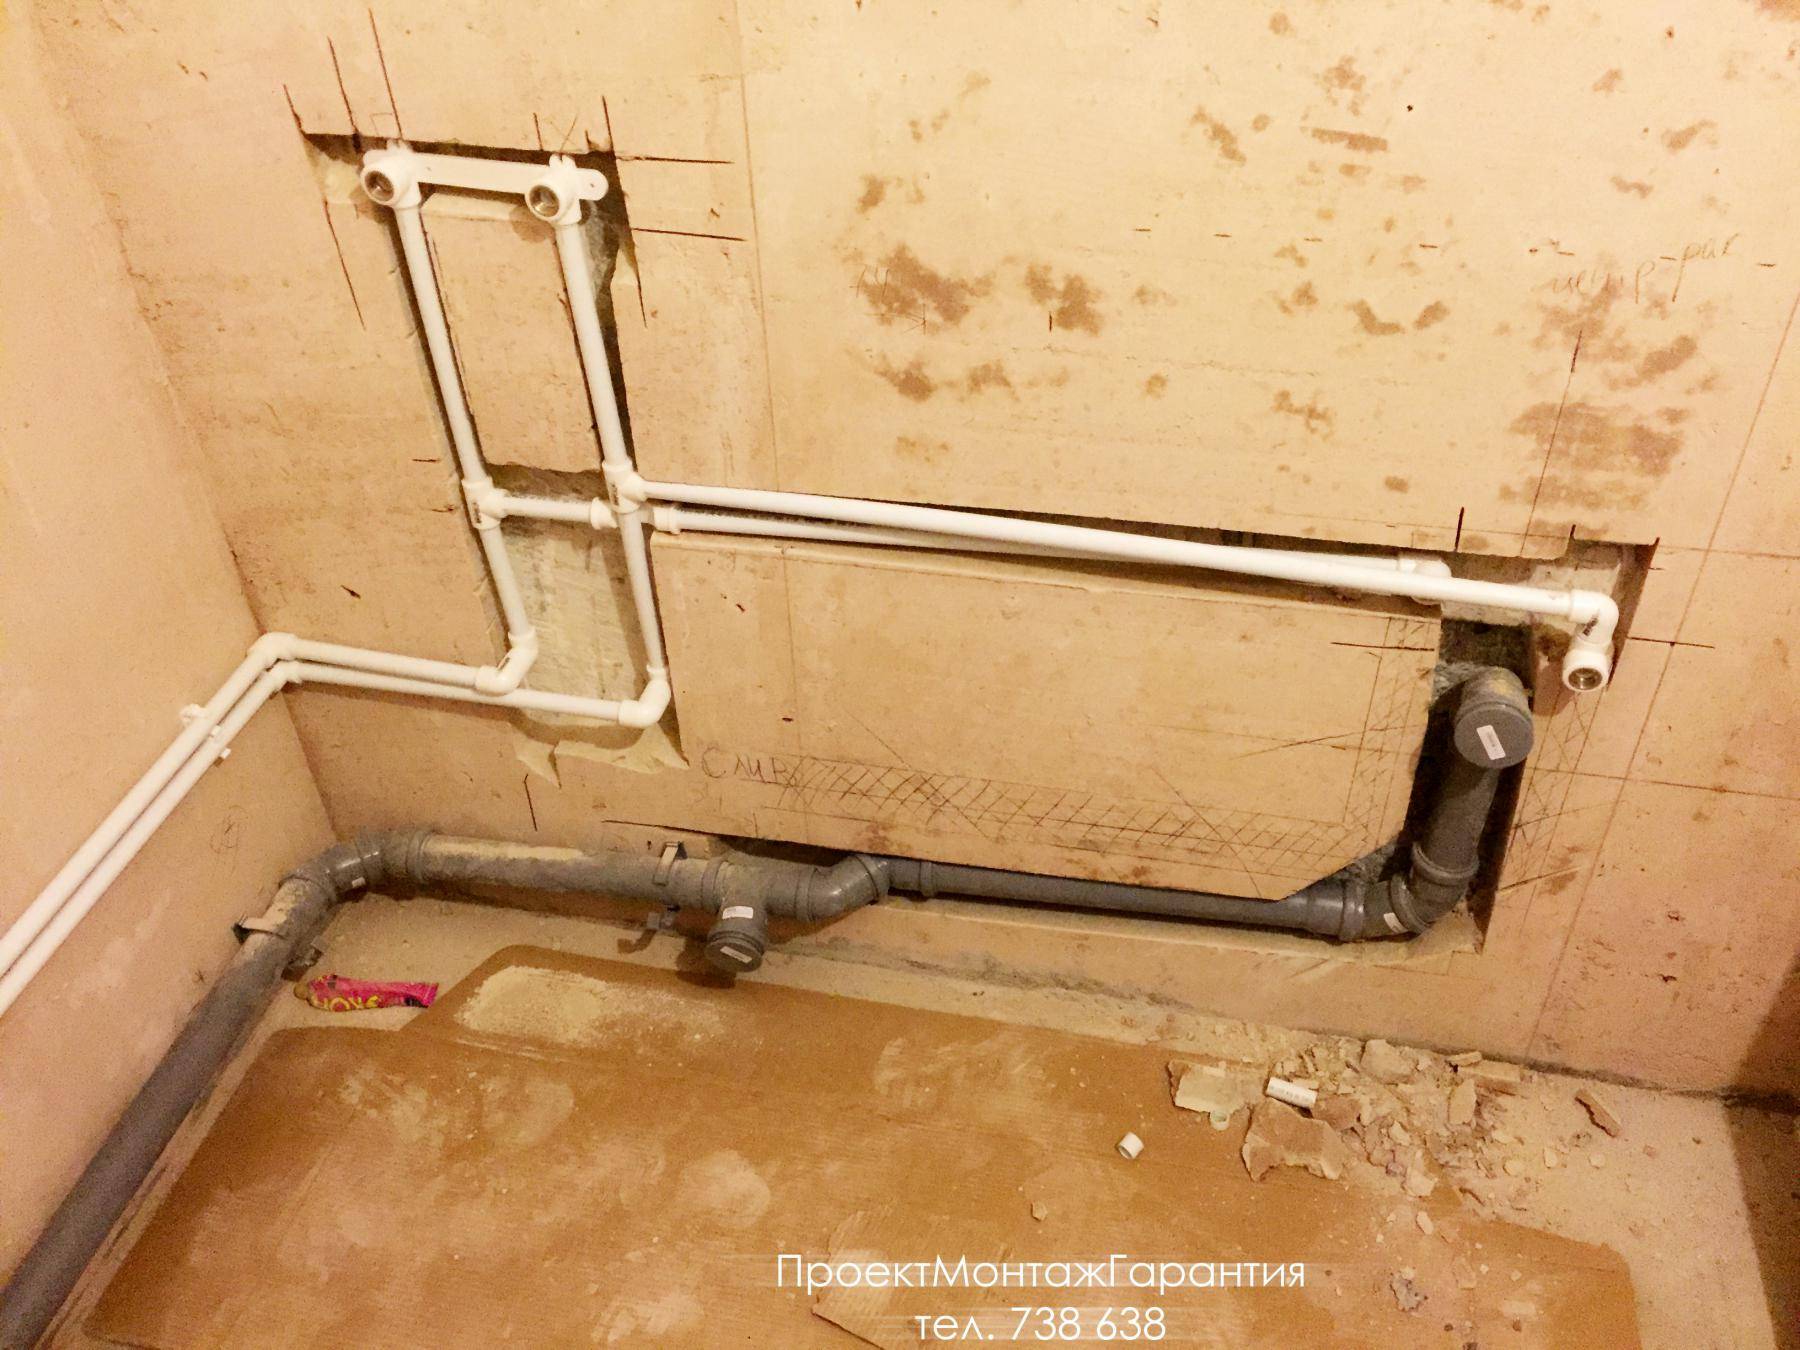 Замена канализационных труб в квартире своими руками: демонтаж старых  и сборка новых